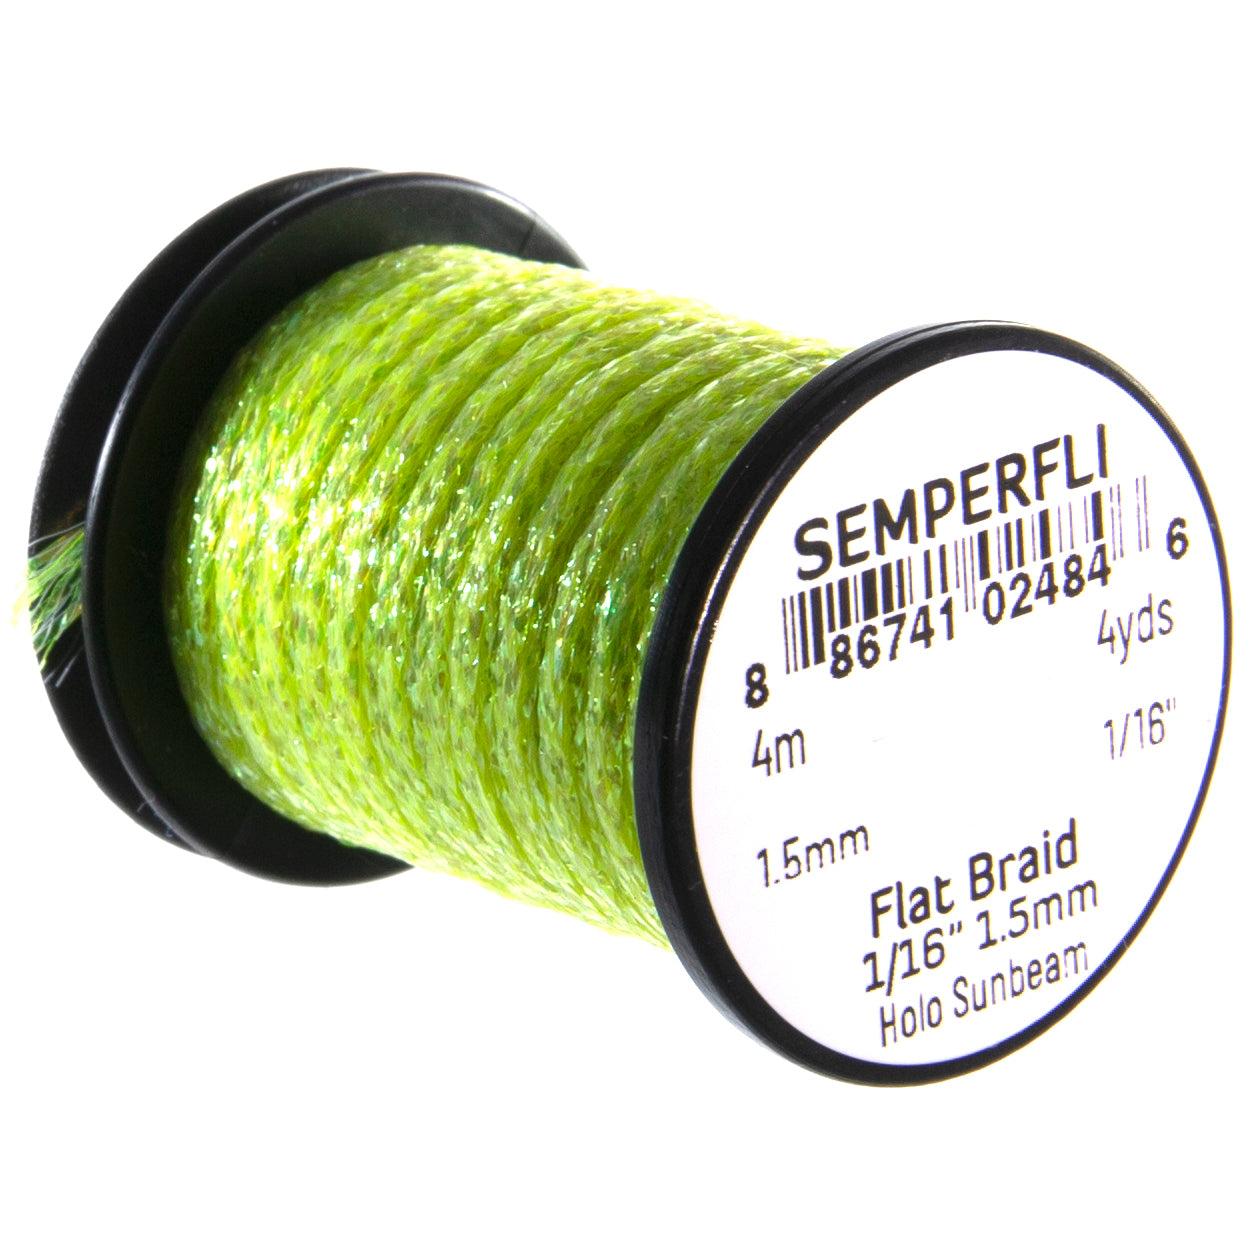 SemperFli Flat Braid 1.5mm 1/16"